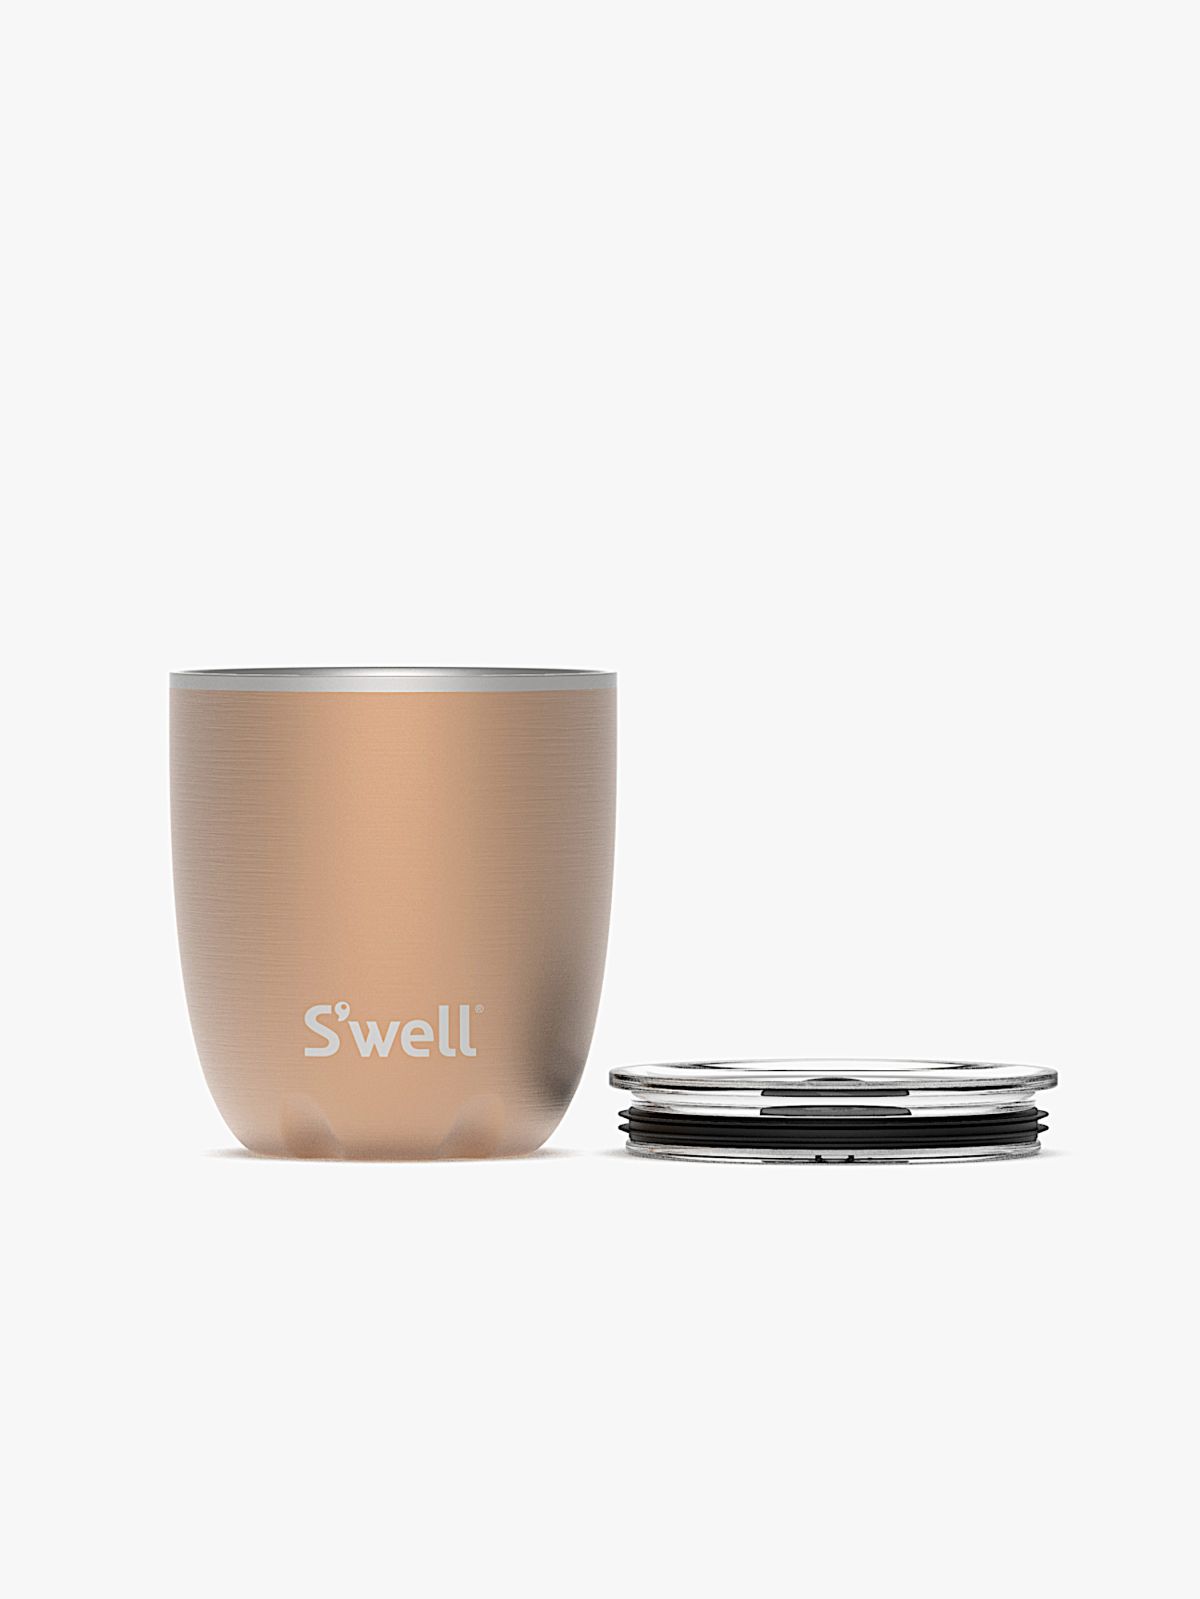  כוס תרמית עם לוגו של SWELL